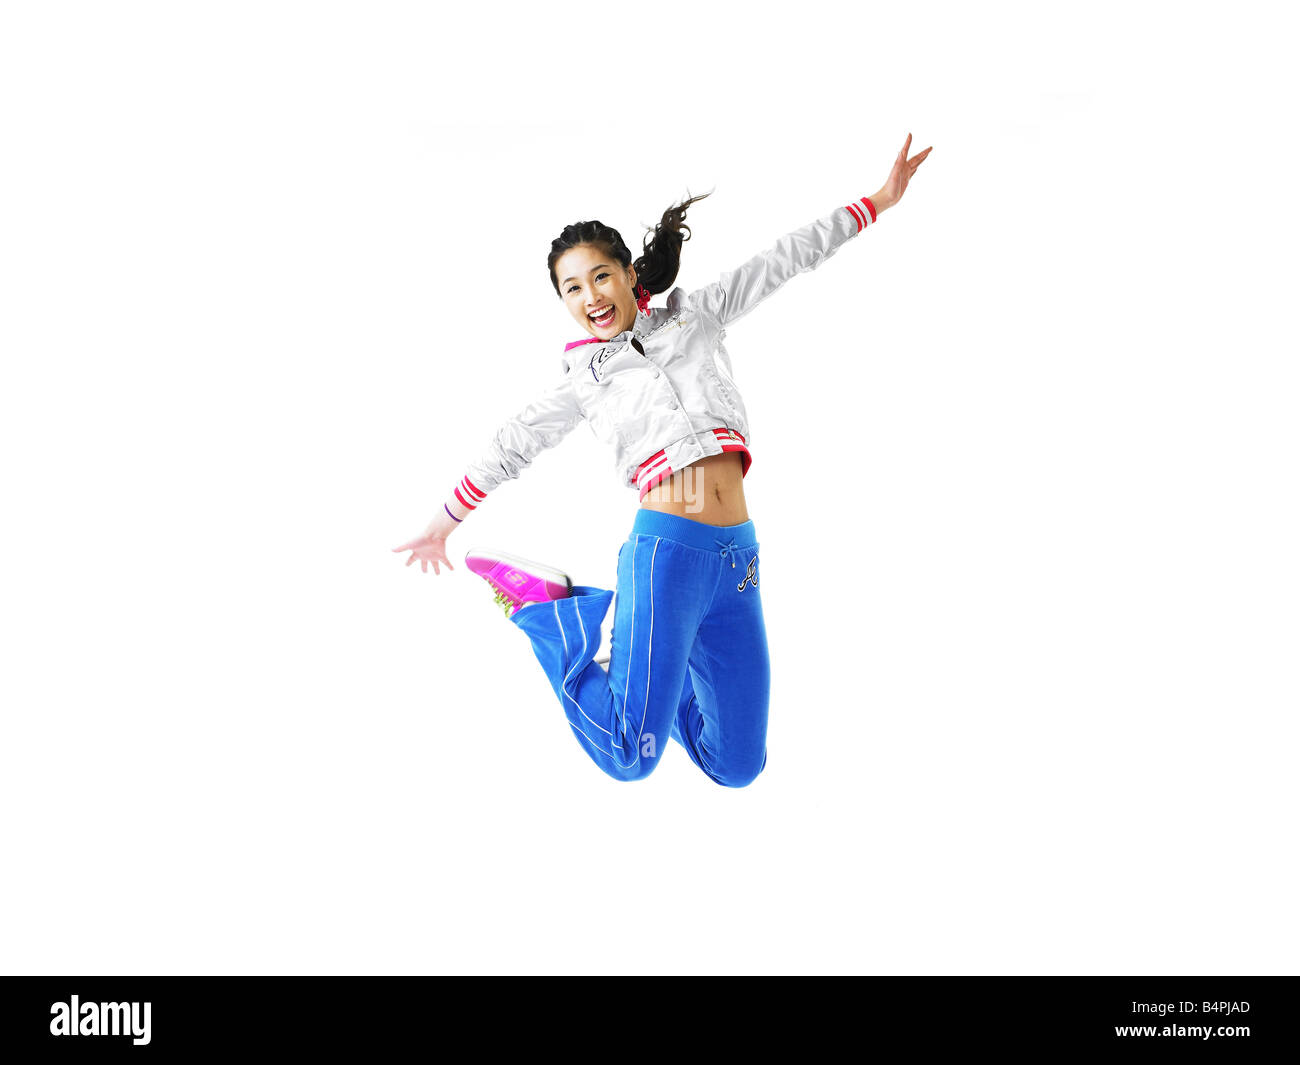 Junge Frau springt in die Luft, Lächeln, Porträt Stockfoto